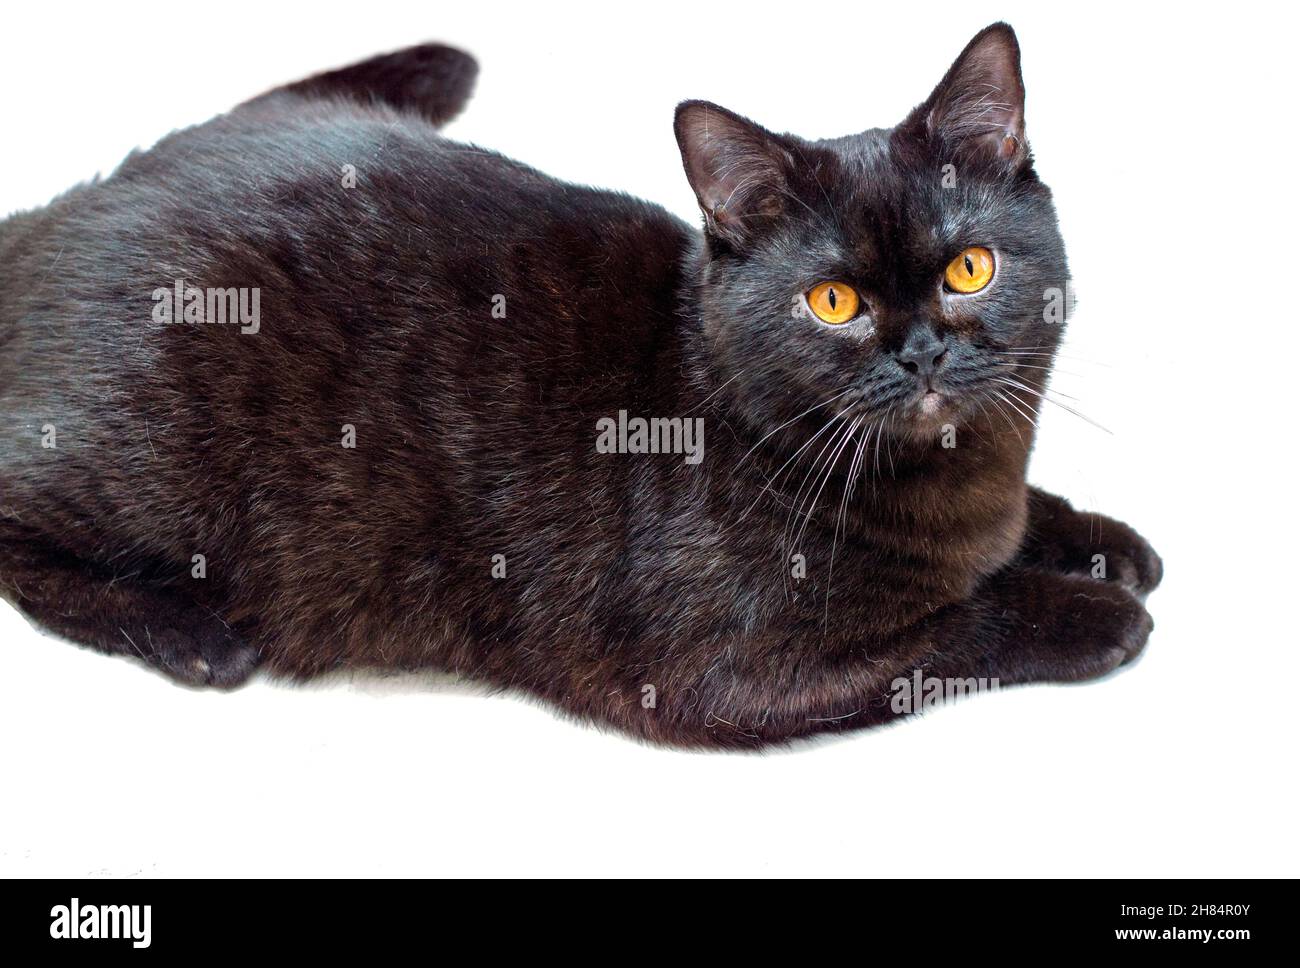 Gato oscuro escocés aísla el fondo, gatos y gatos en la casa, mascotas, sus fotos y su vida Foto de stock